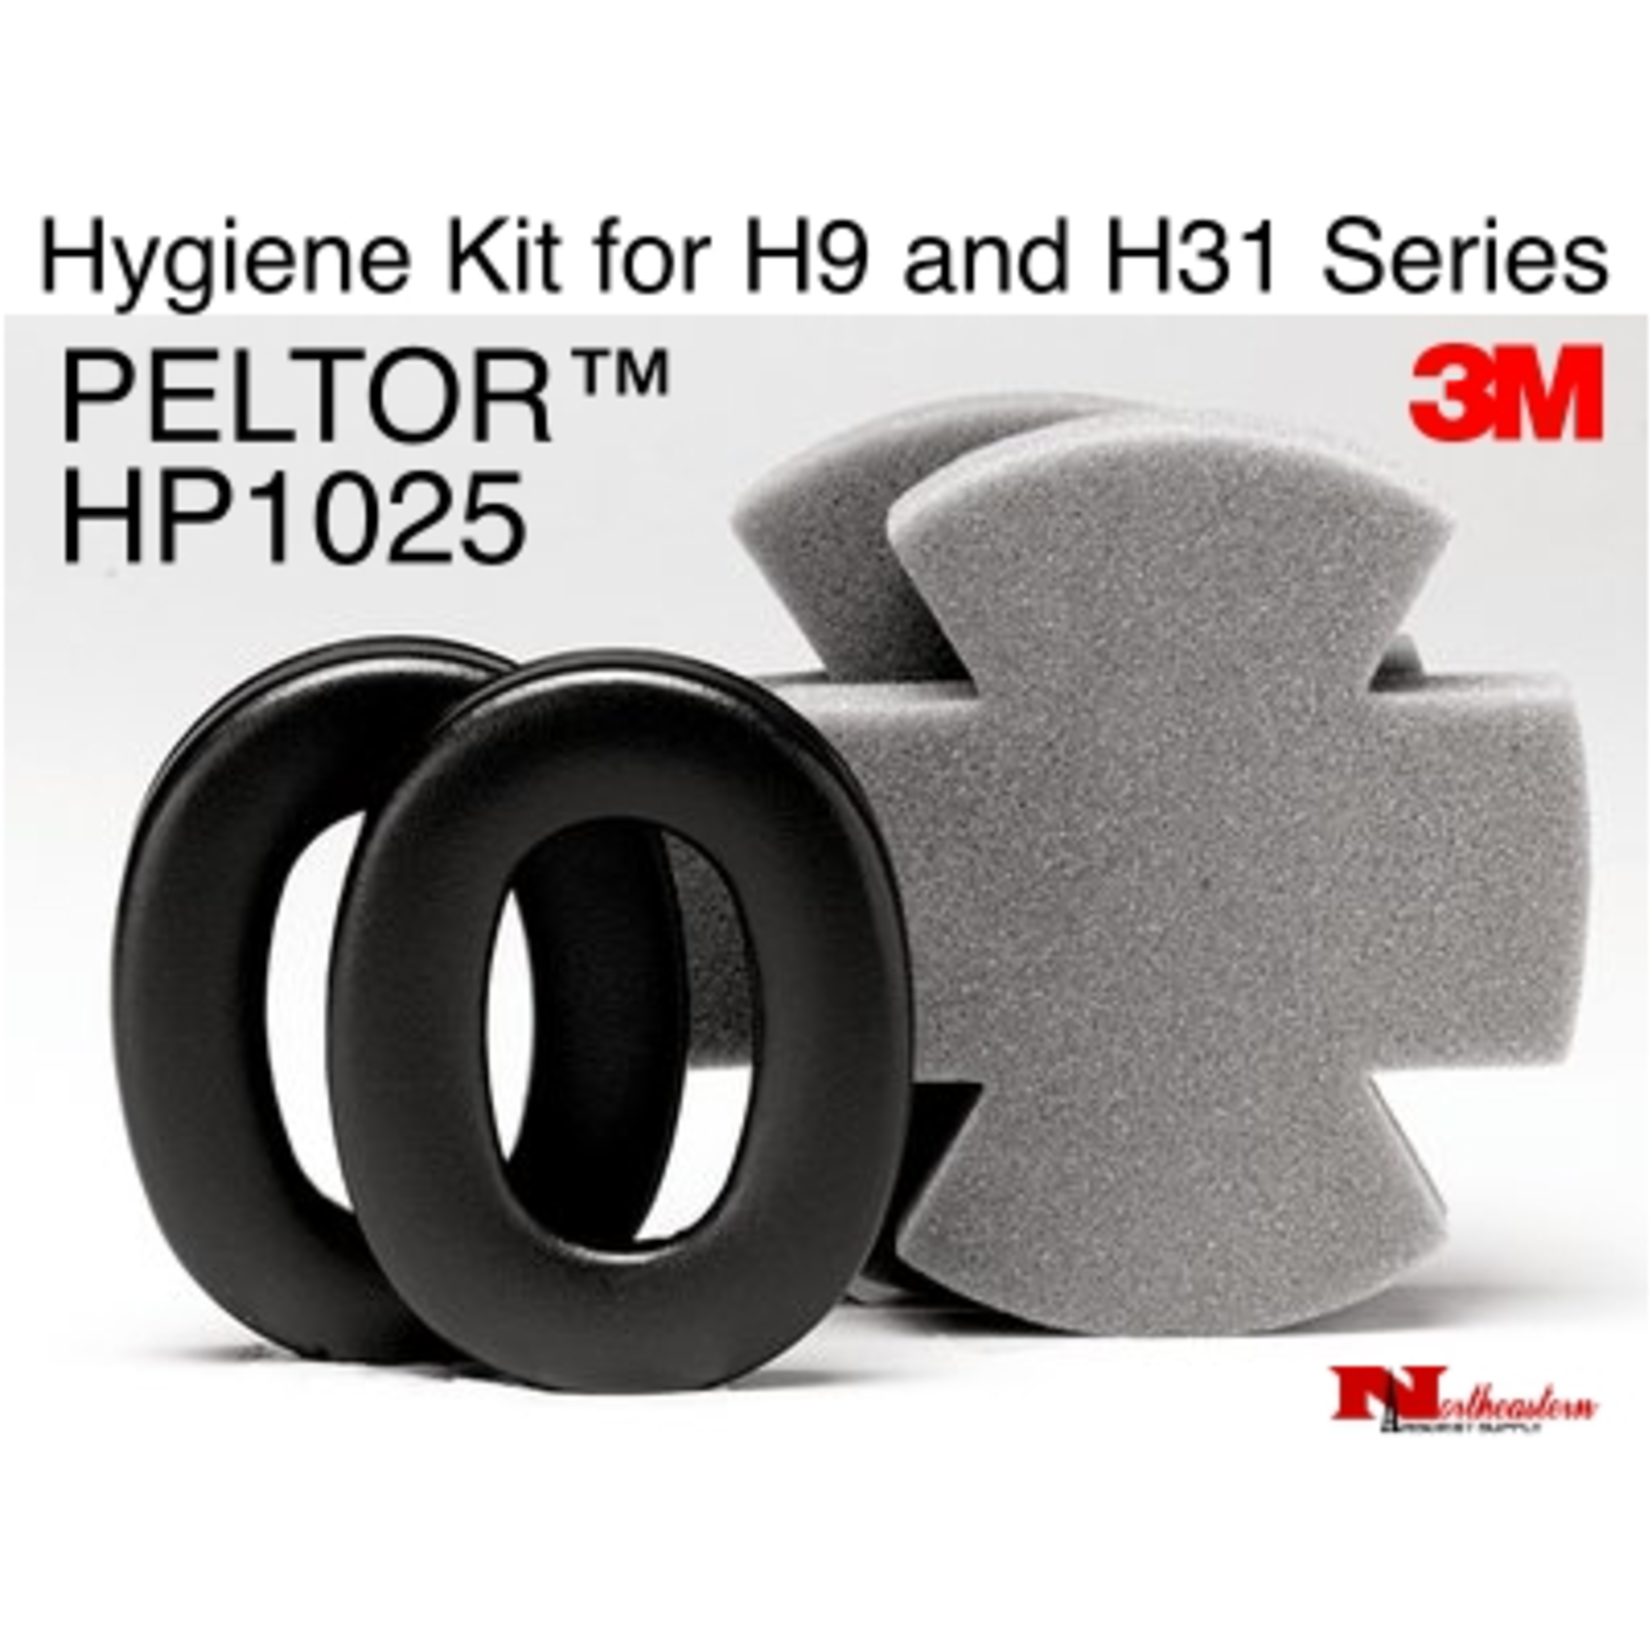 3M PELTOR Peltor Earmuff Hygiene Kit Hy3